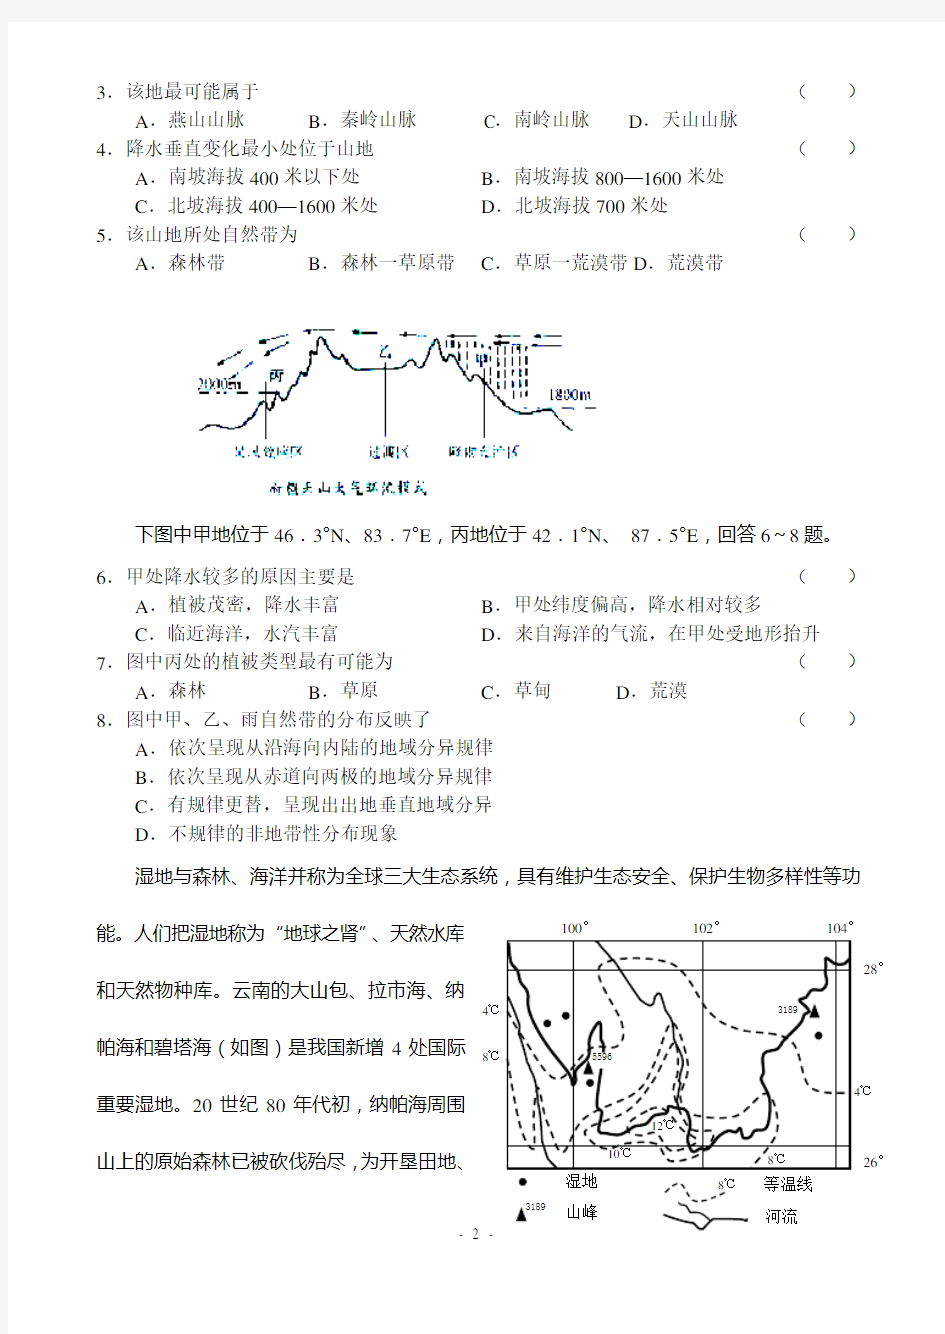 (完整版)中国区域地理复习测试卷